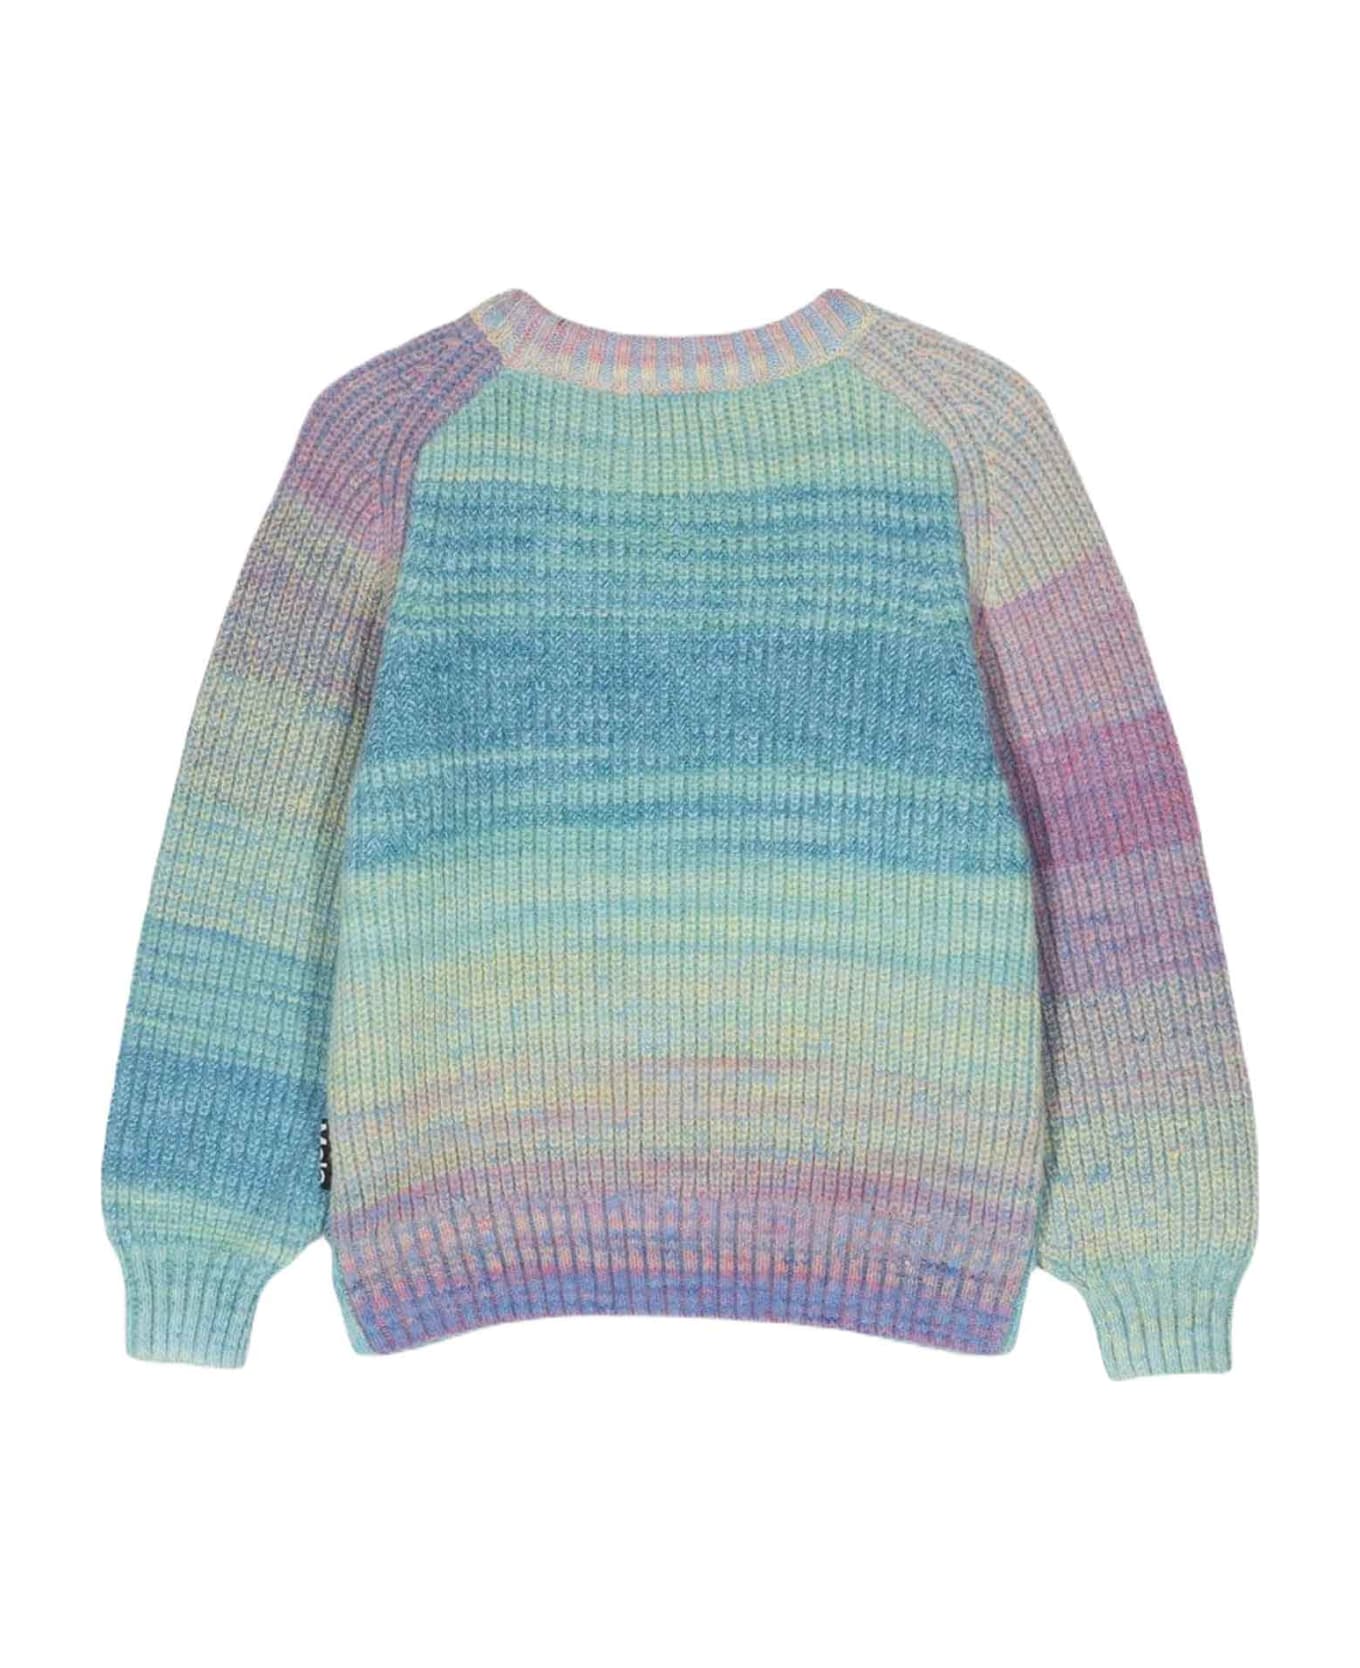 Molo Multicolor Sweater Unisex Kids - Multicolor